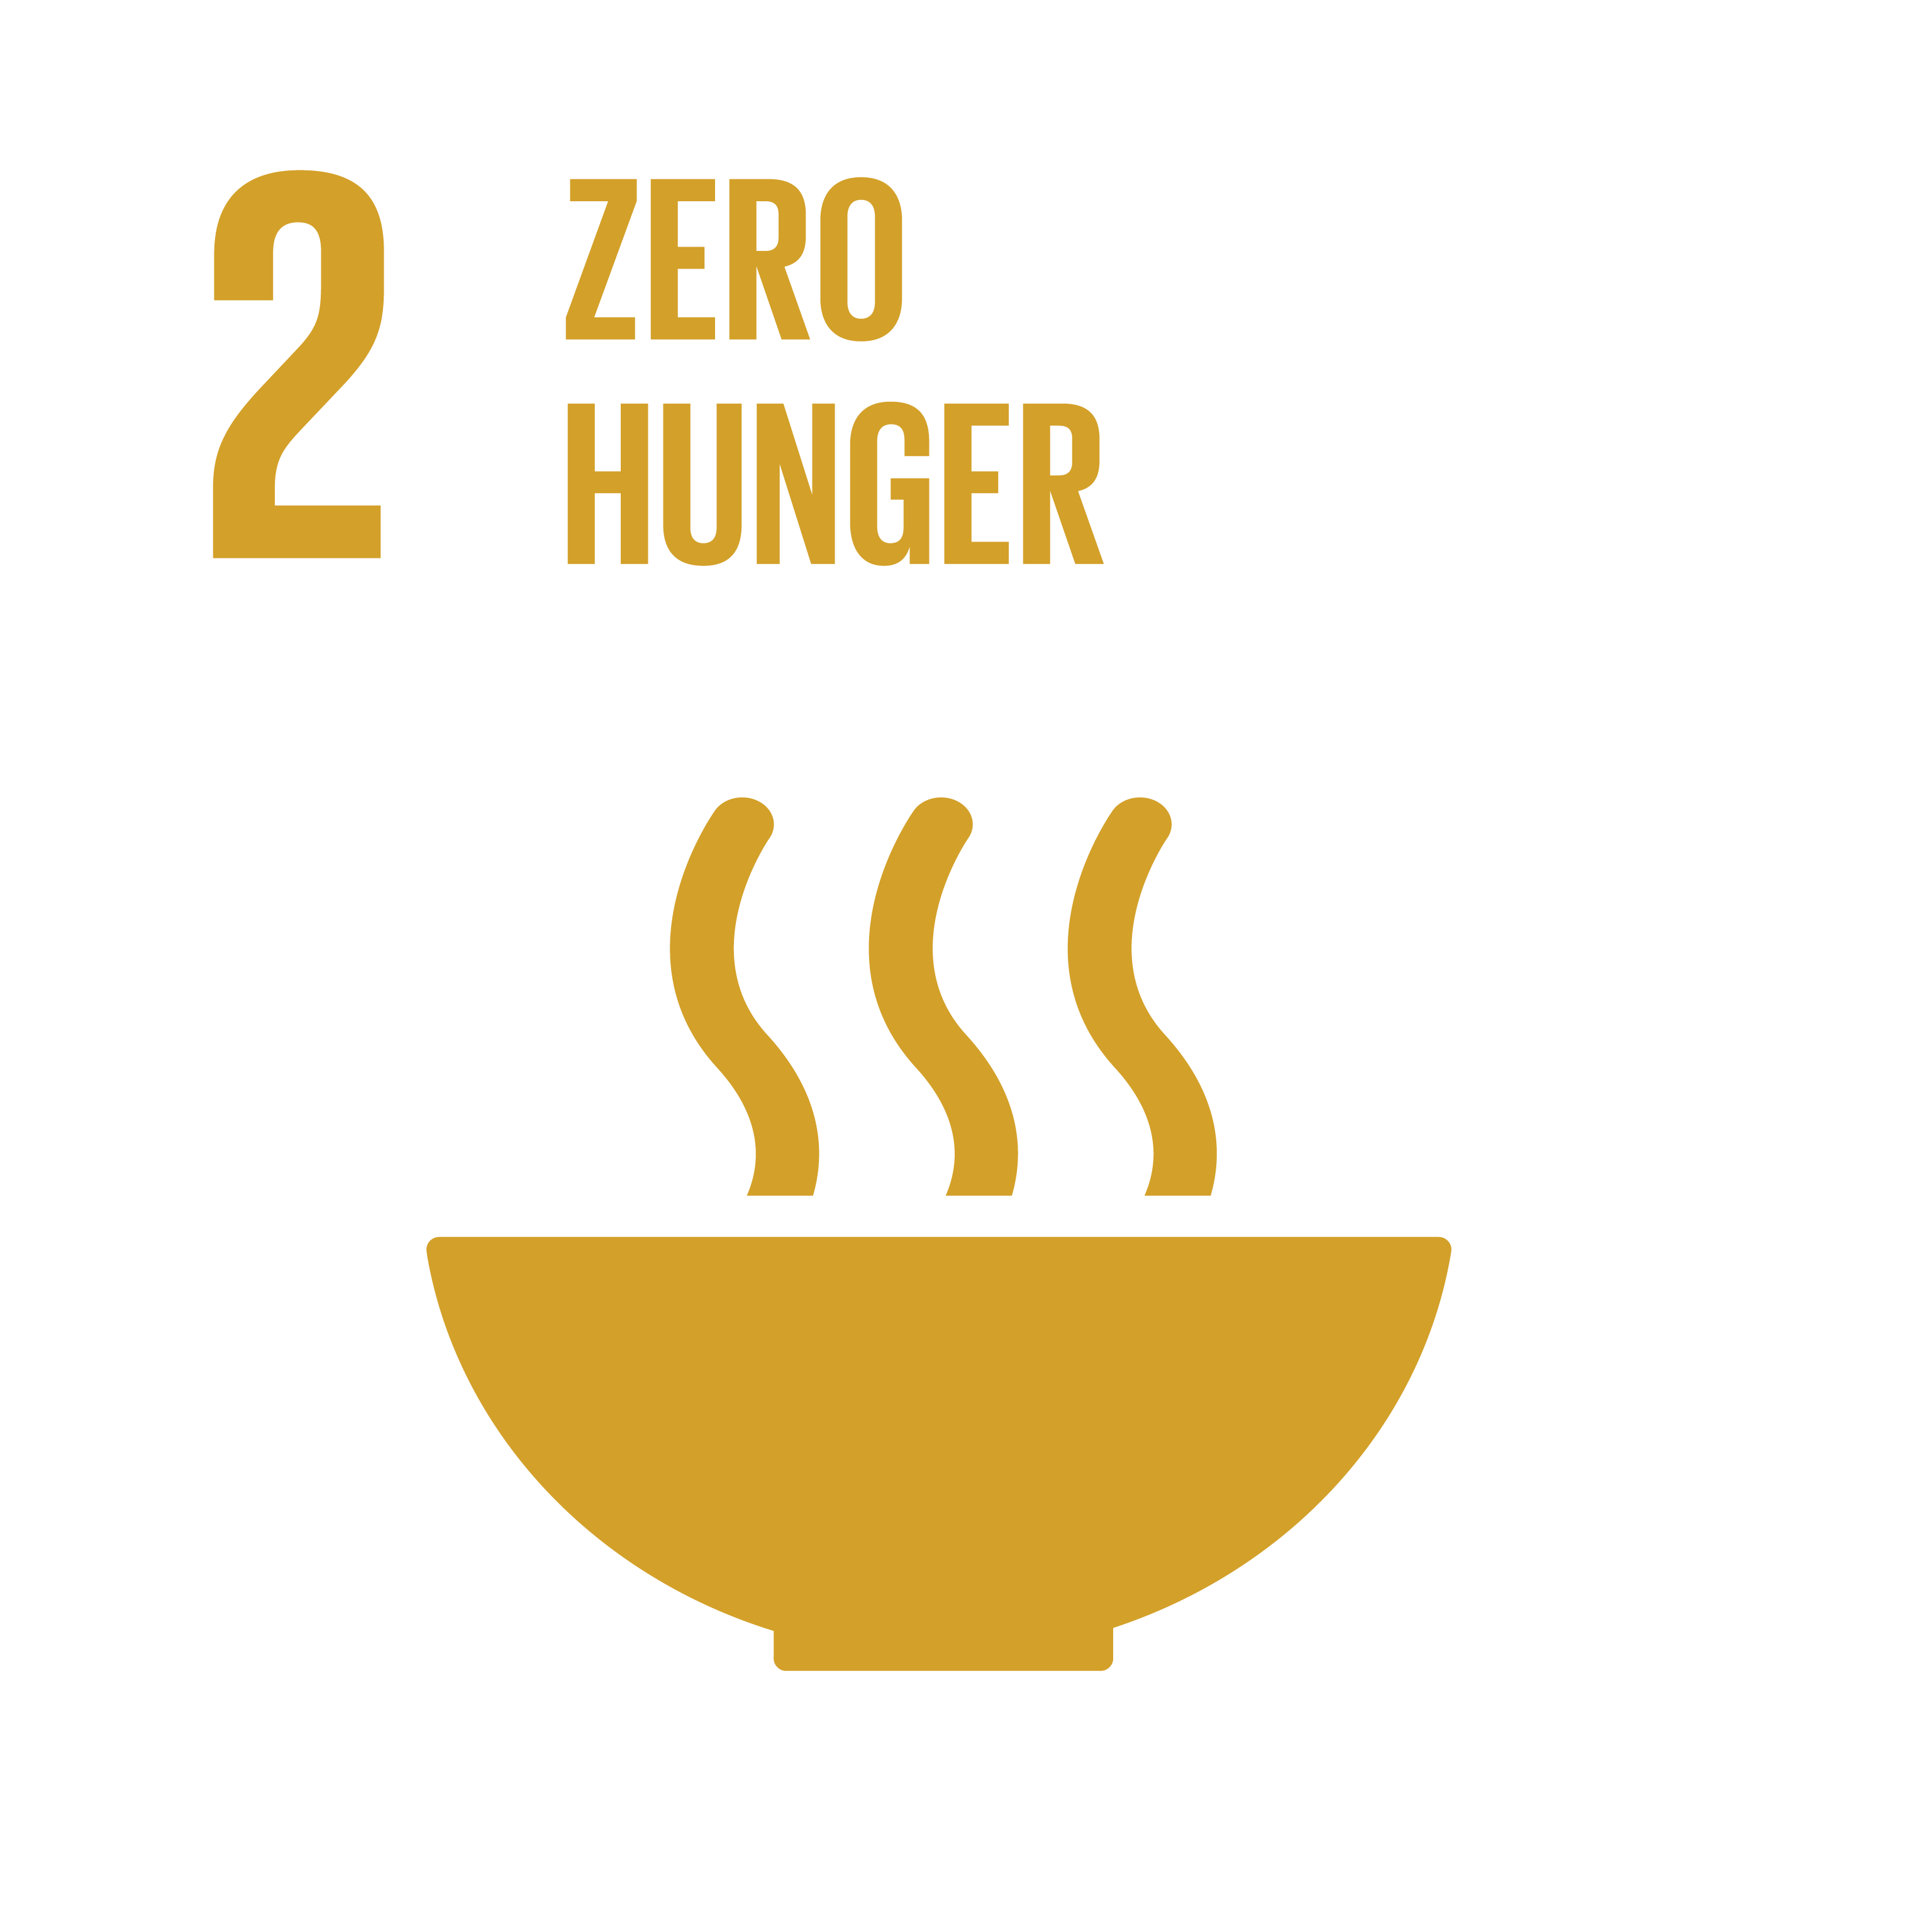 SDG02: Zero Hunger